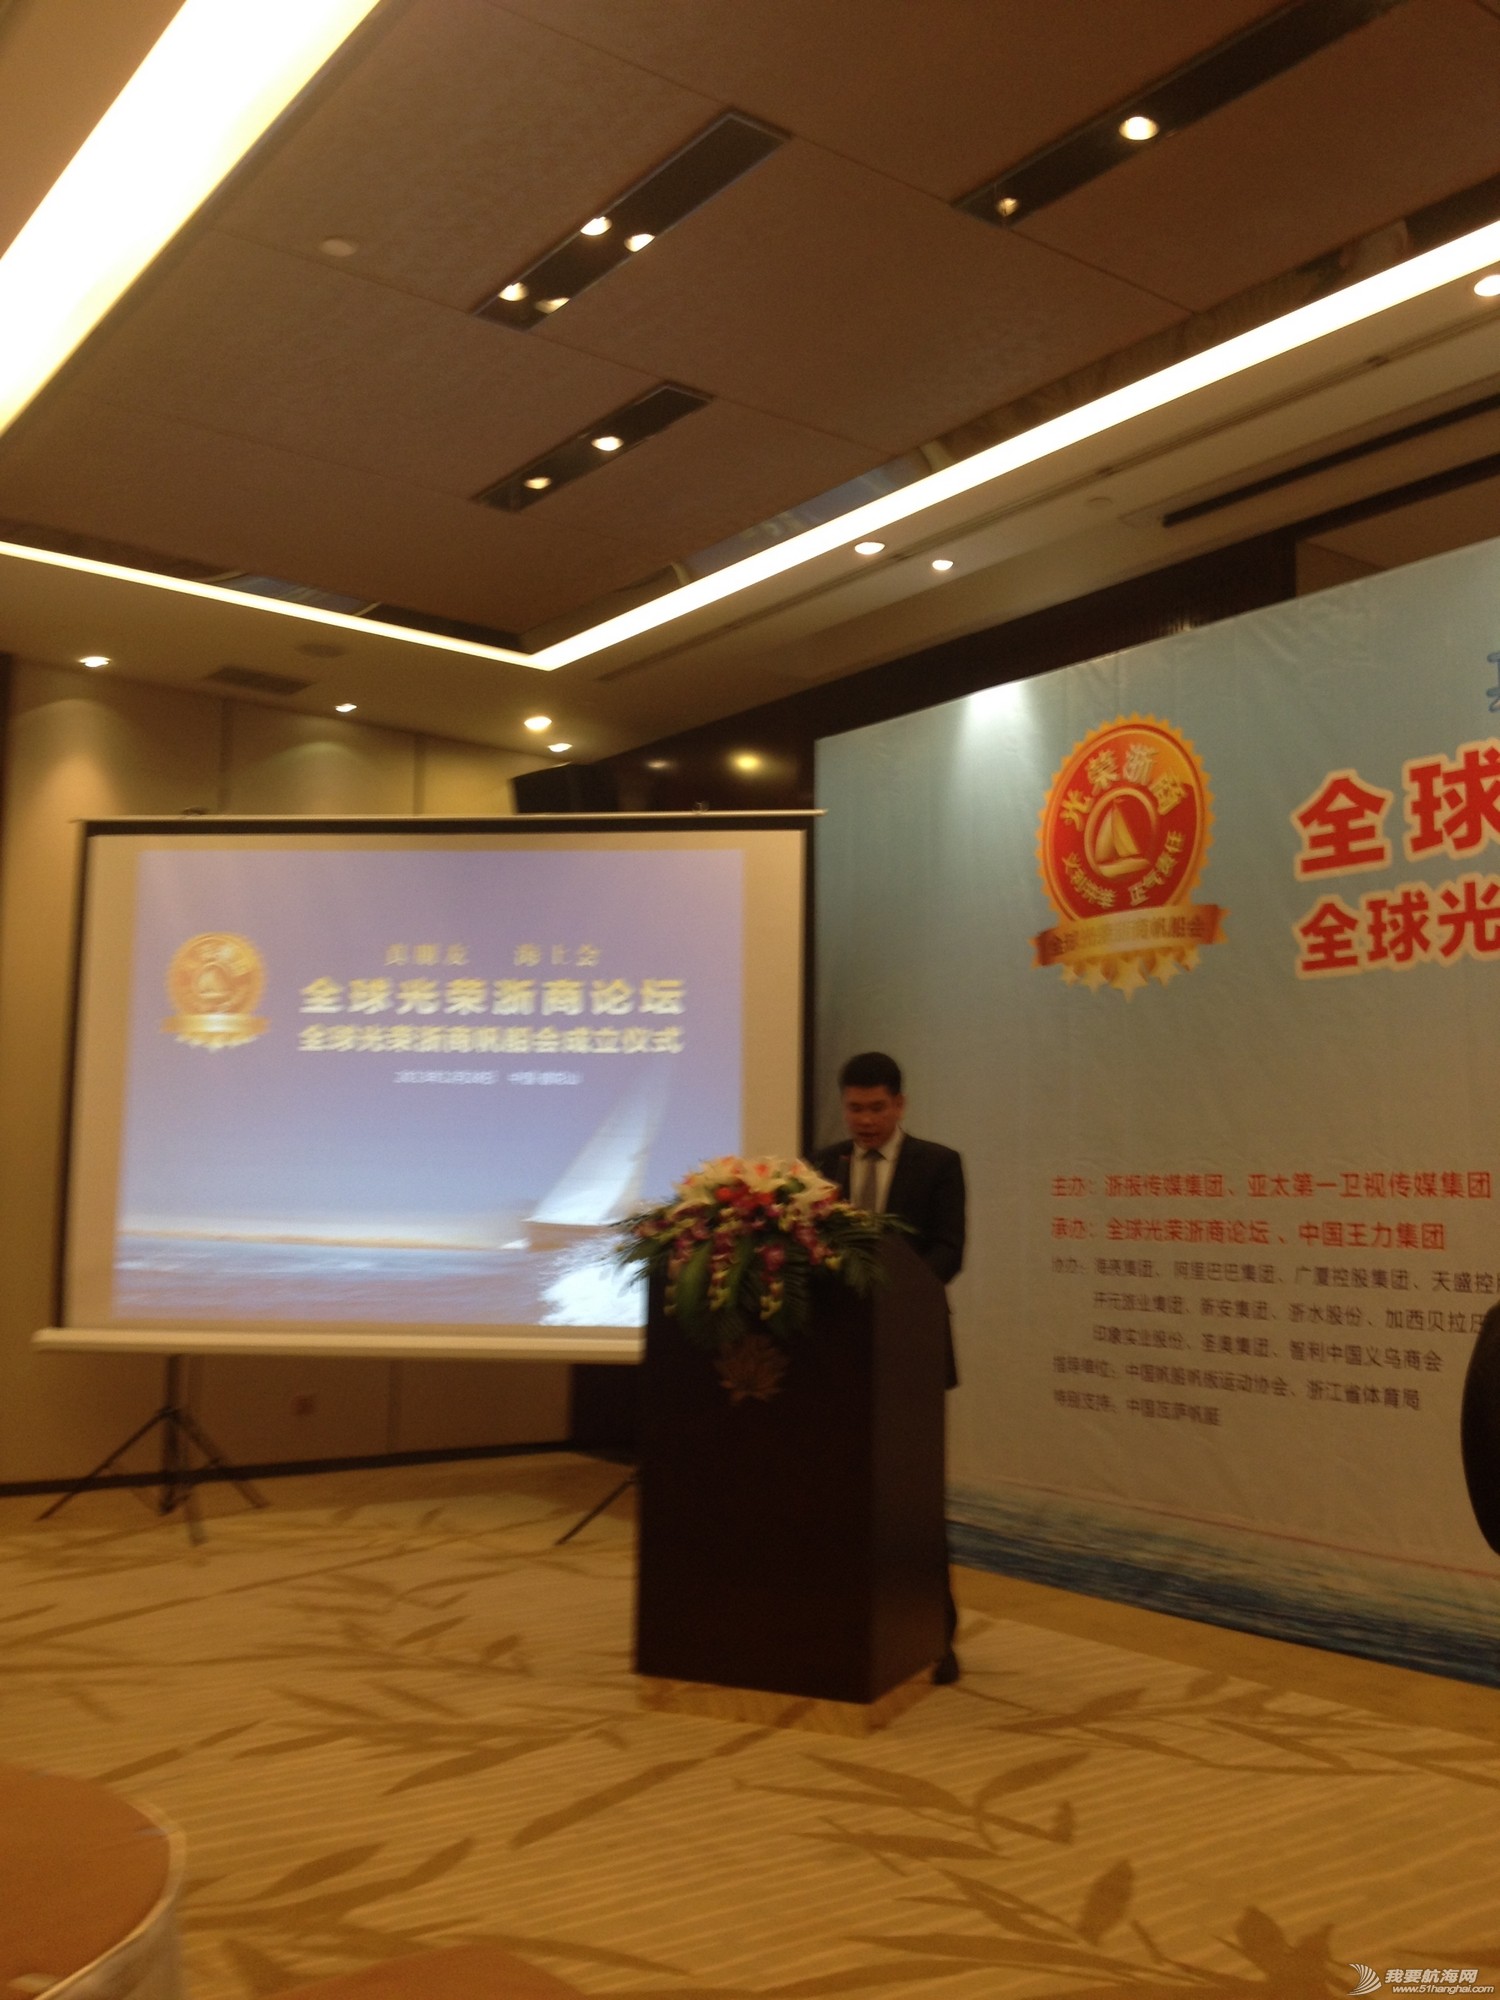 中国王力集团董事长王跃斌代表光荣浙商宣读了《开阔胸怀创造未来》的成立宣言。